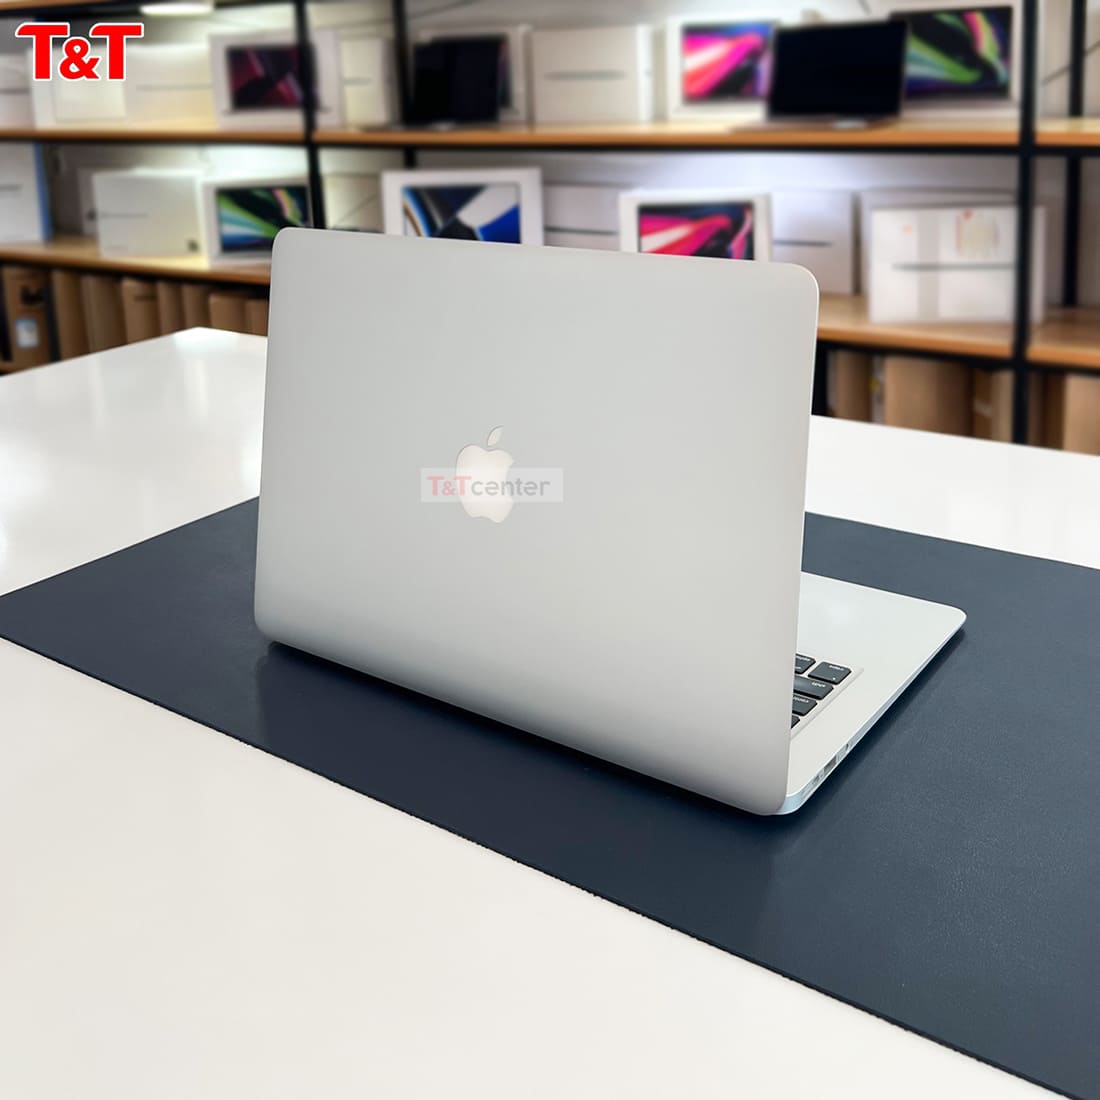 Đánh giá MacBook Air 2017 - Laptop mỏng nhẹ, hiệu năng ấn tượng 